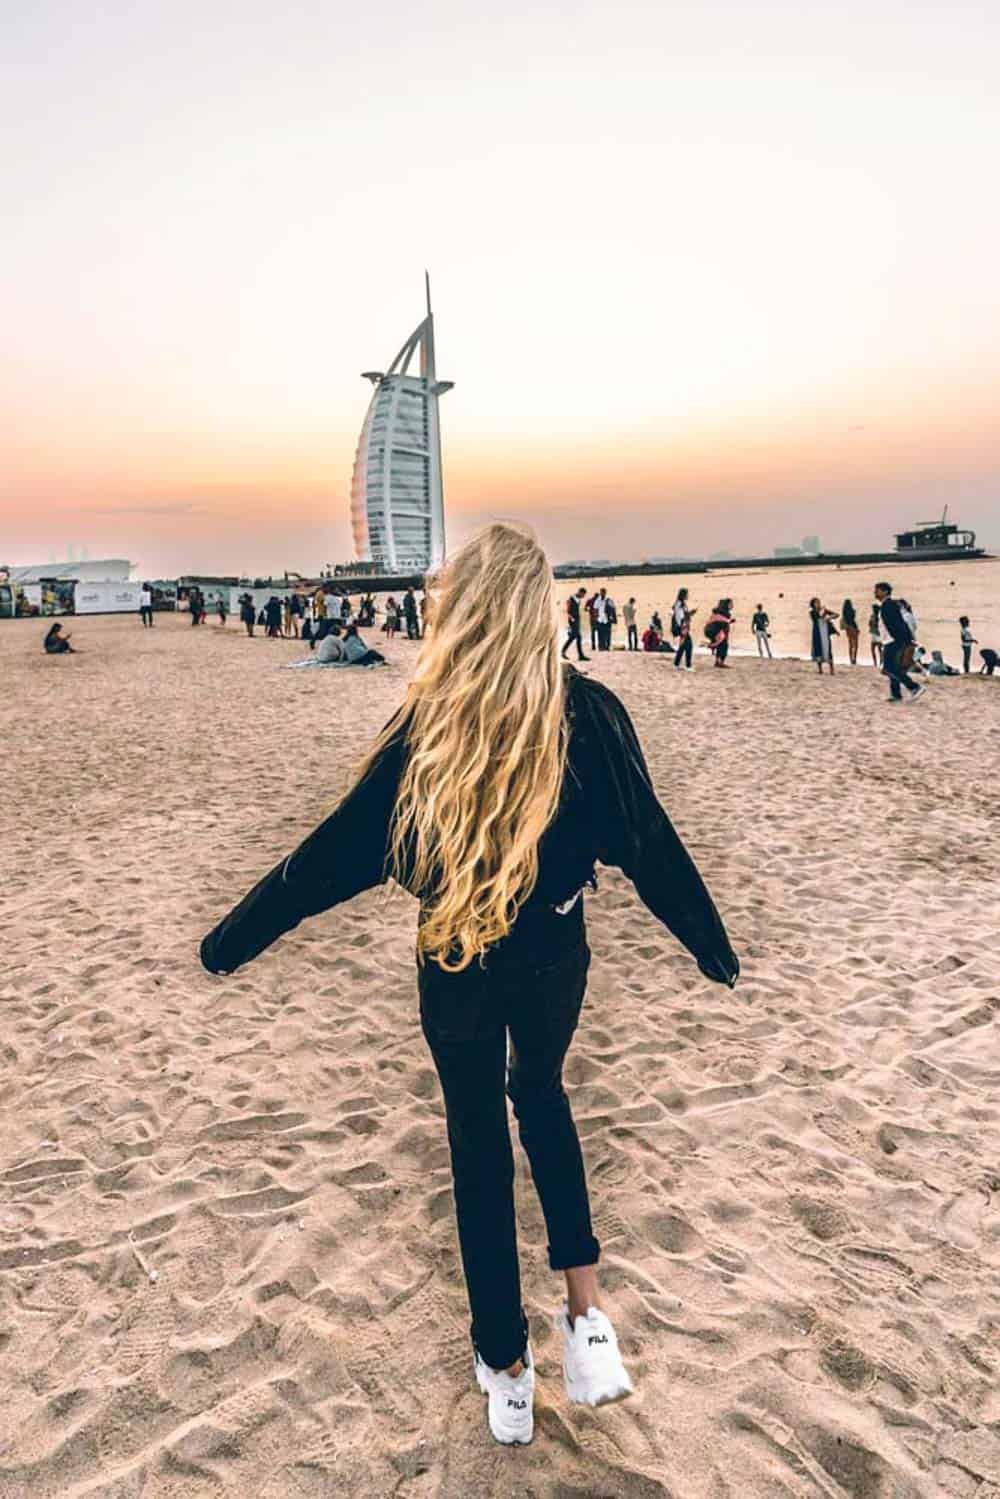 Jumeirah Beach in Dubai UAE